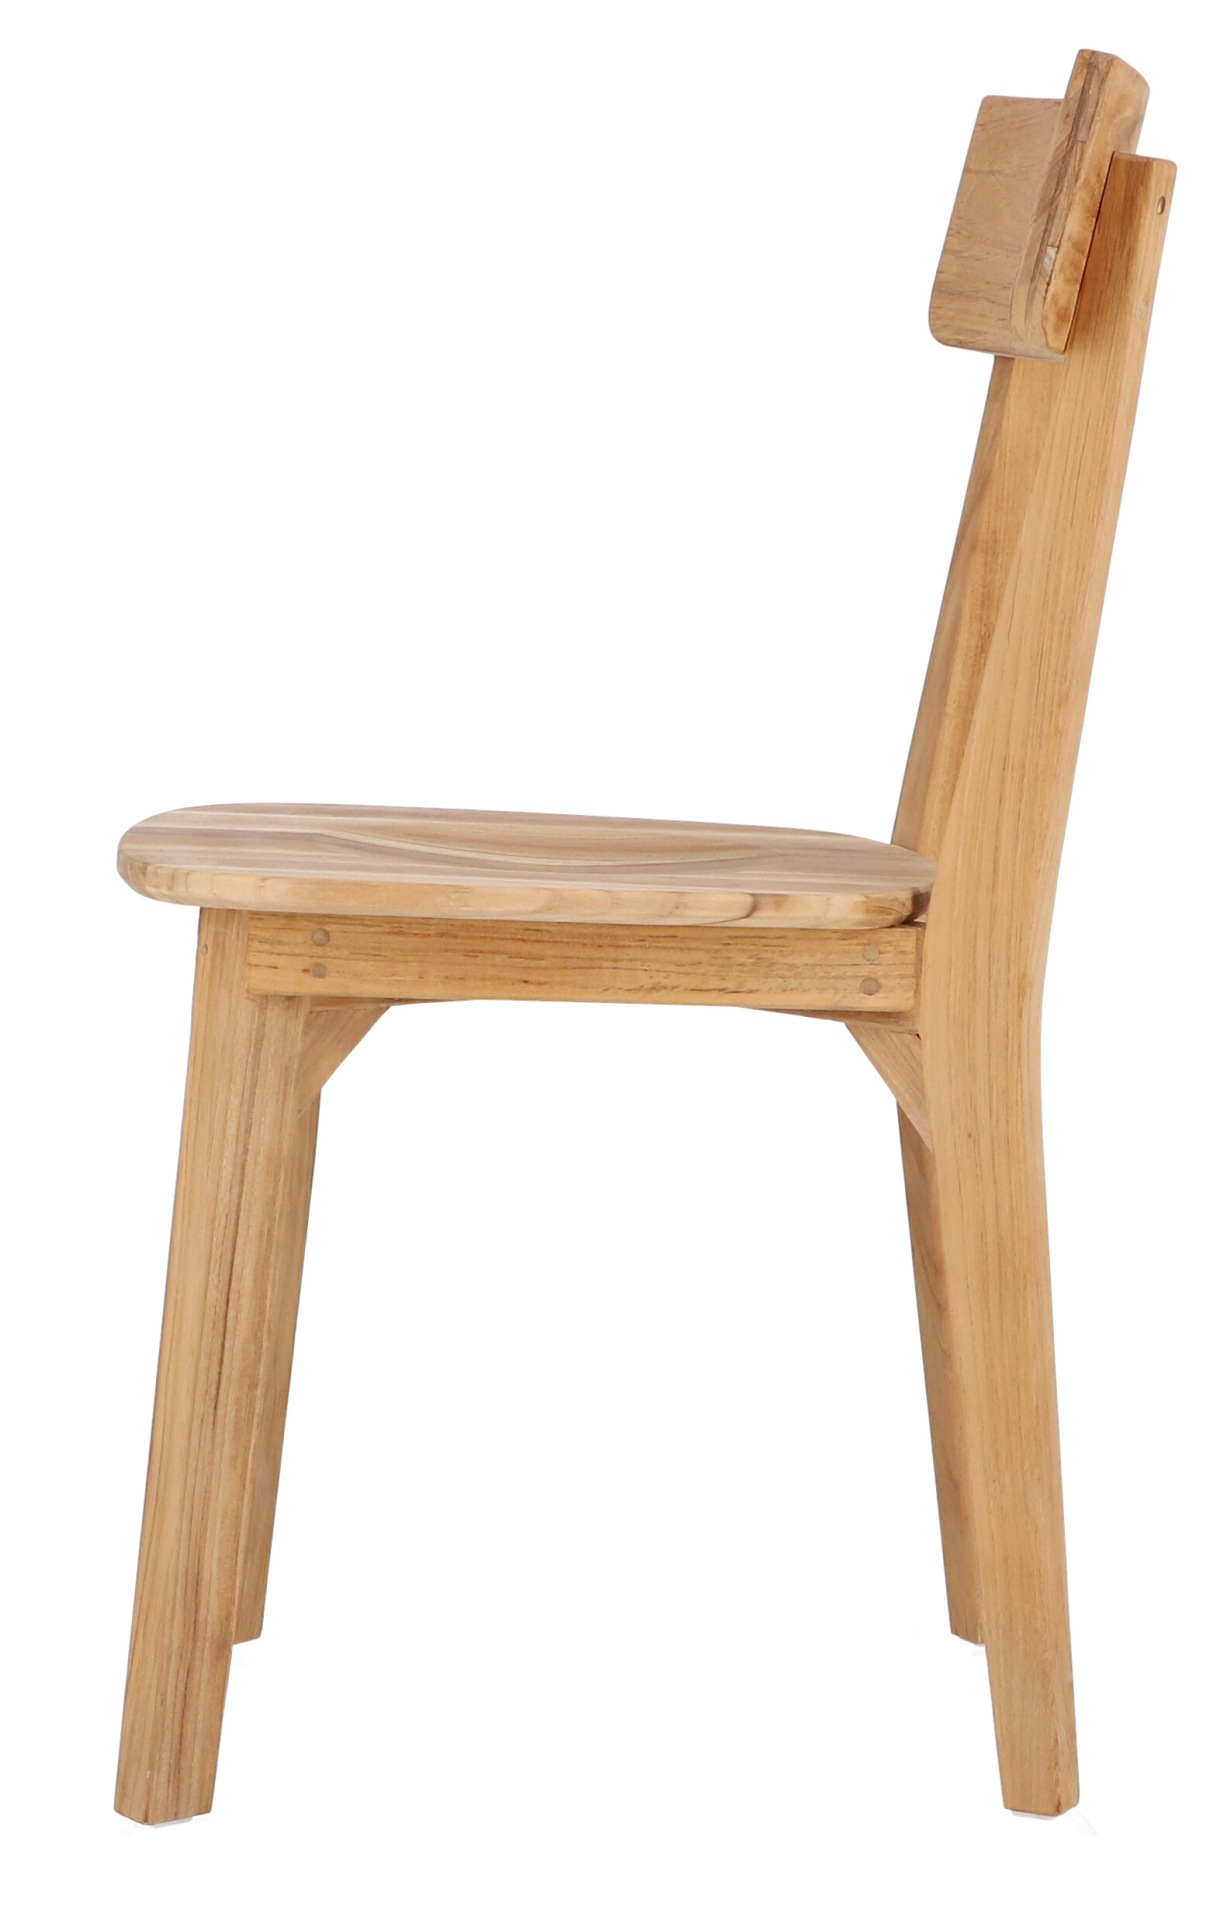 Gefertigt wurde der Stuhl Nea aus Teakholz und hat dadurch ein natürliches aber auch schlichtes Design. Er ist ein Produkt der Marke Jan Kurtz.